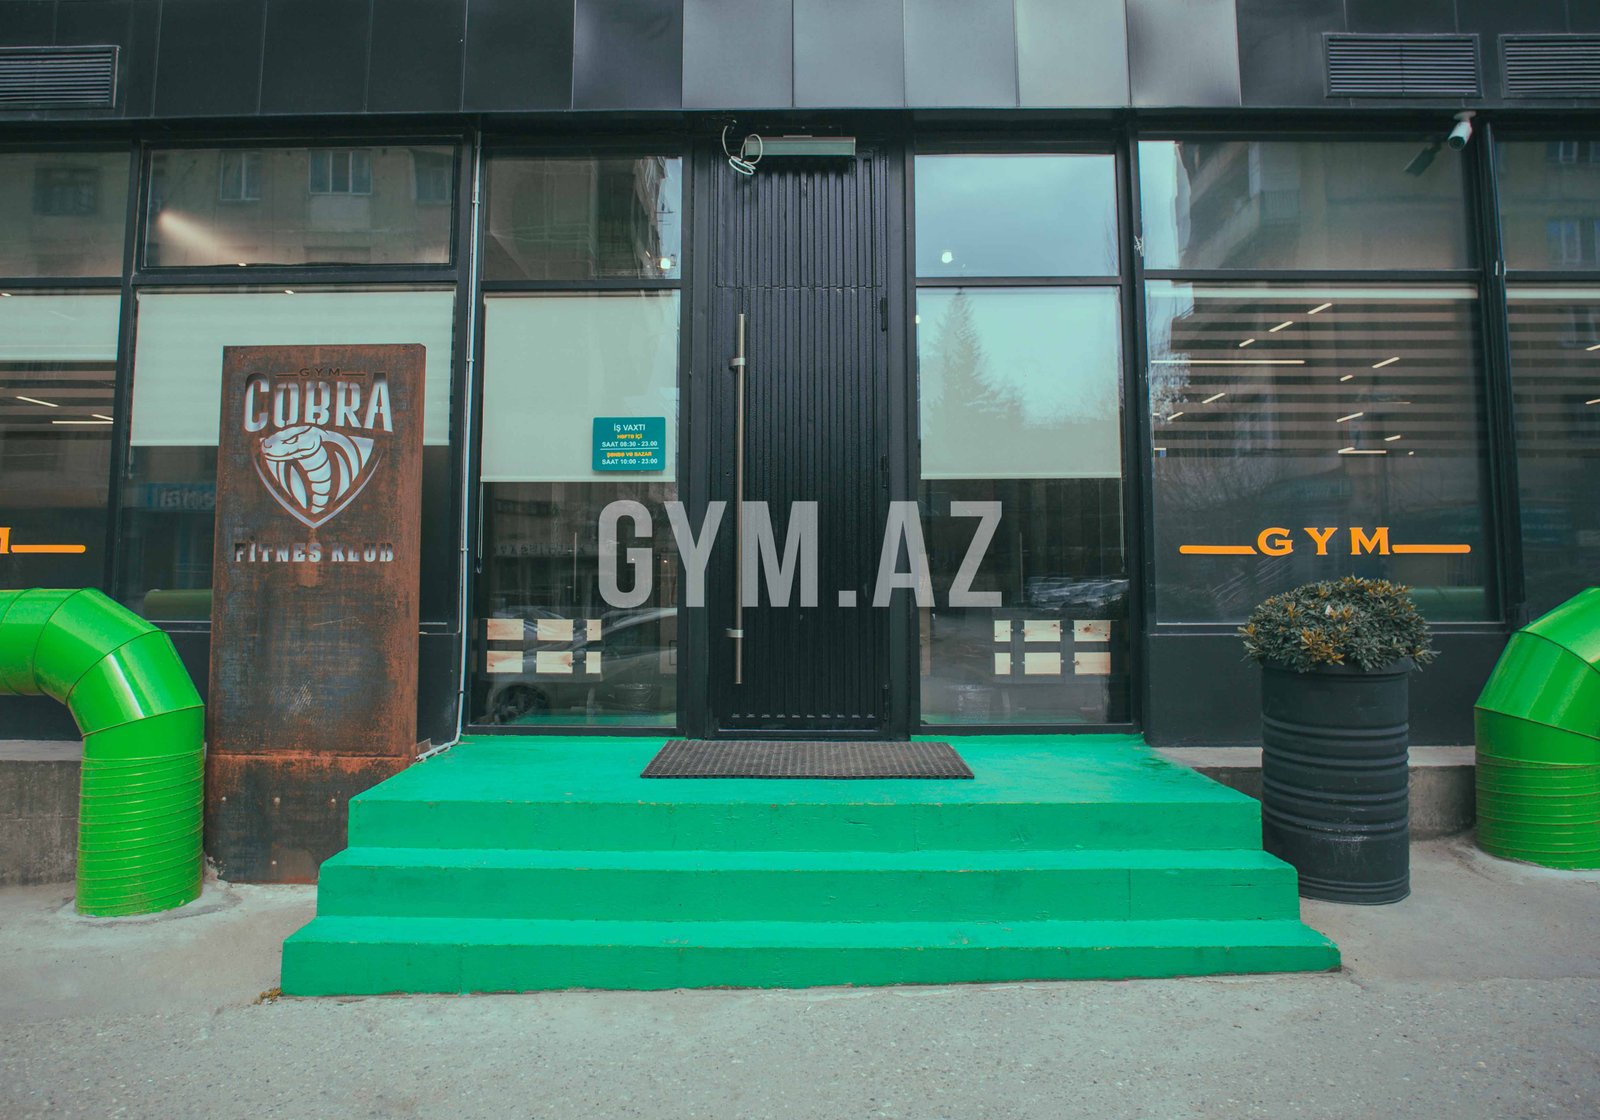 Cobra Gym Club